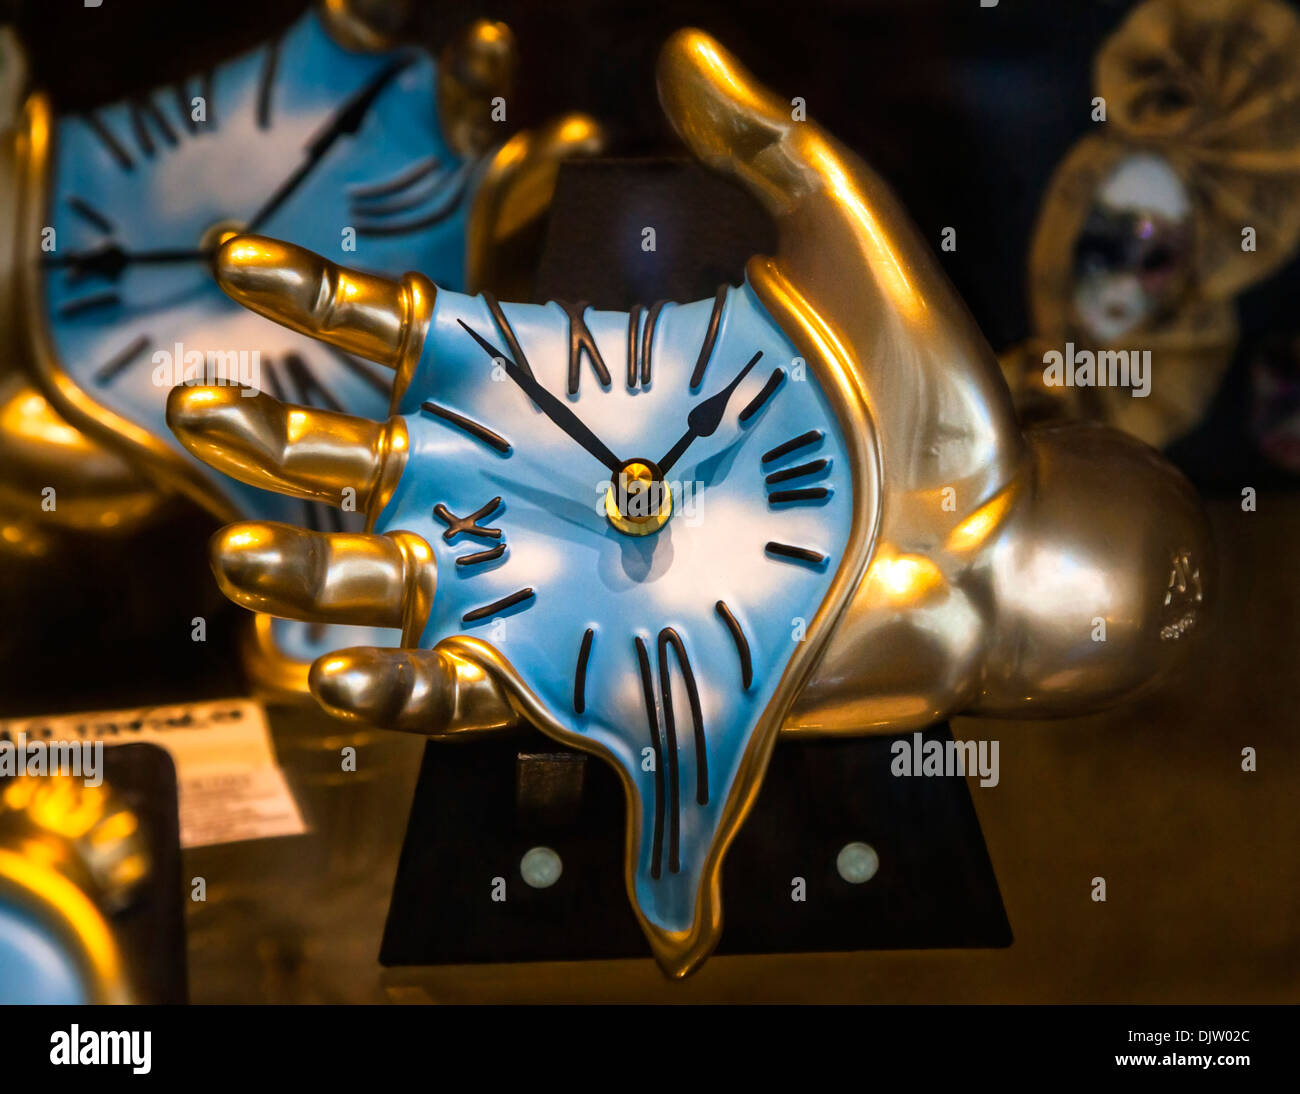 Manos sosteniendo derritiendo relojes de oro con reminiscencias de Salvador Dalí es la persistencia de la memoria. Foto de stock